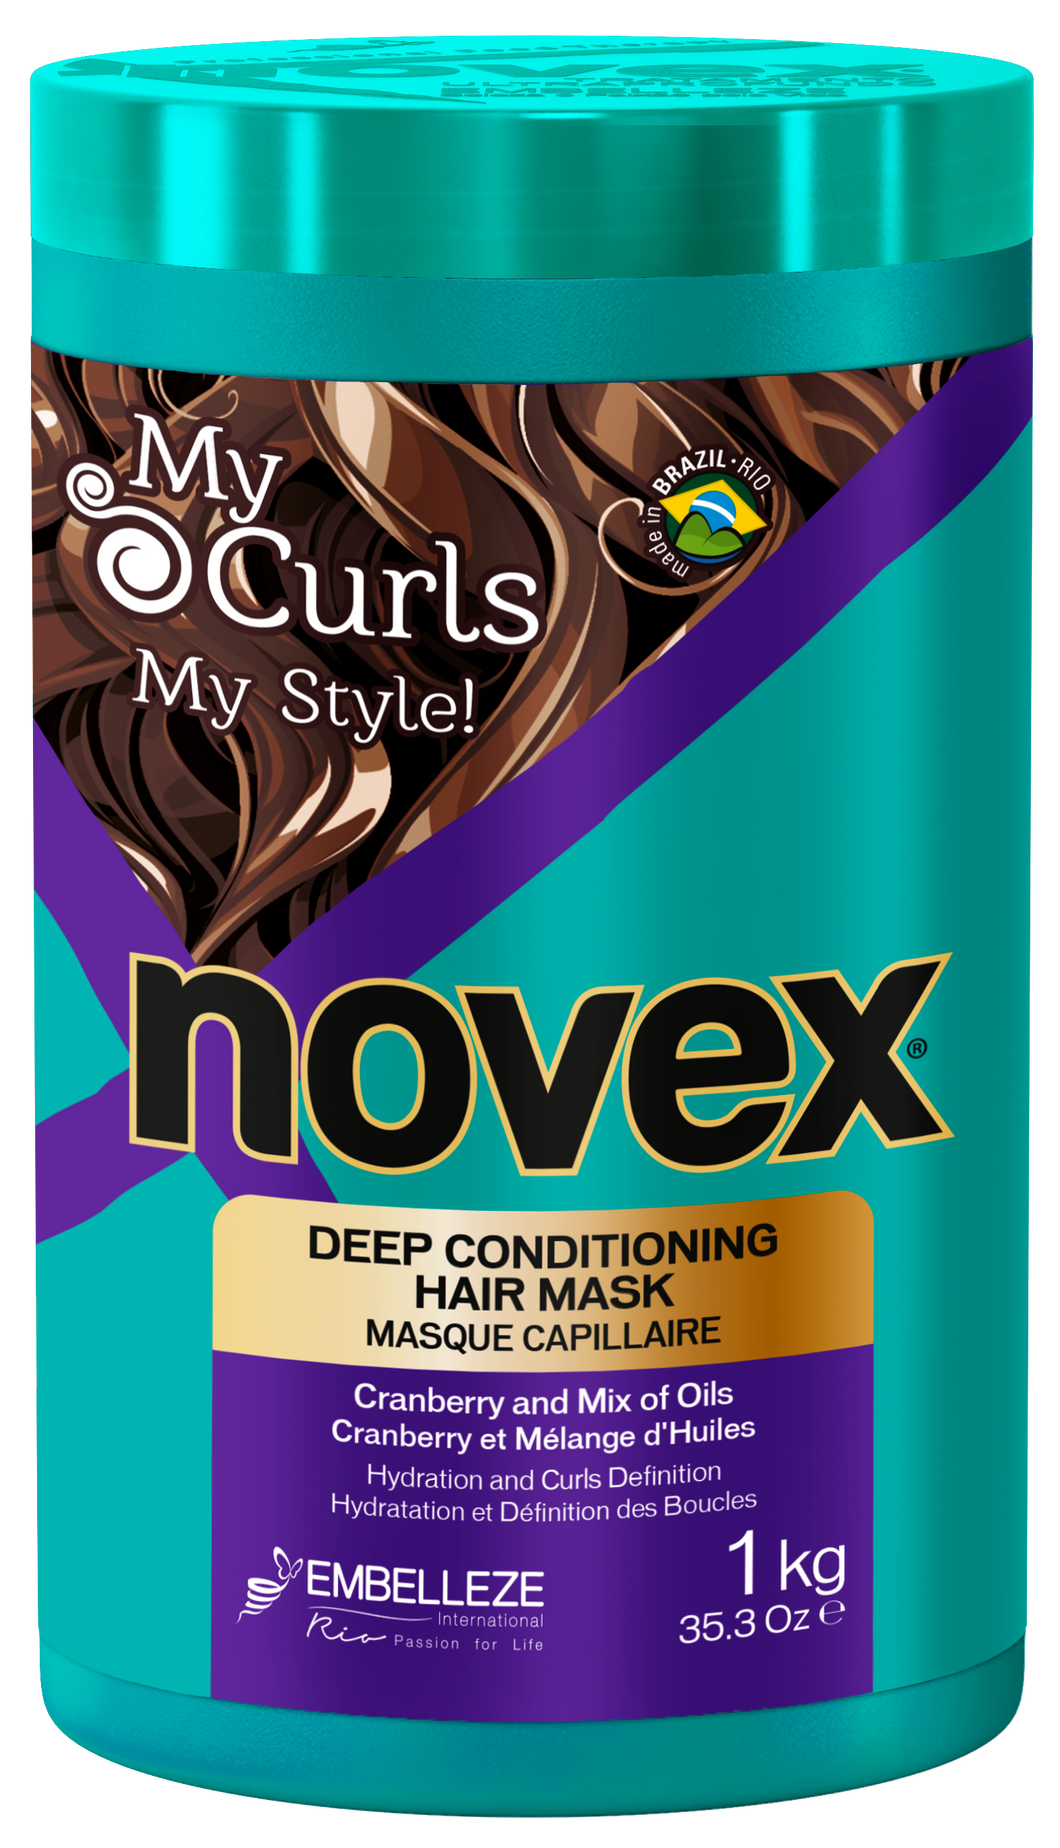 Novex My Curls Dyp Hårkur 1kg